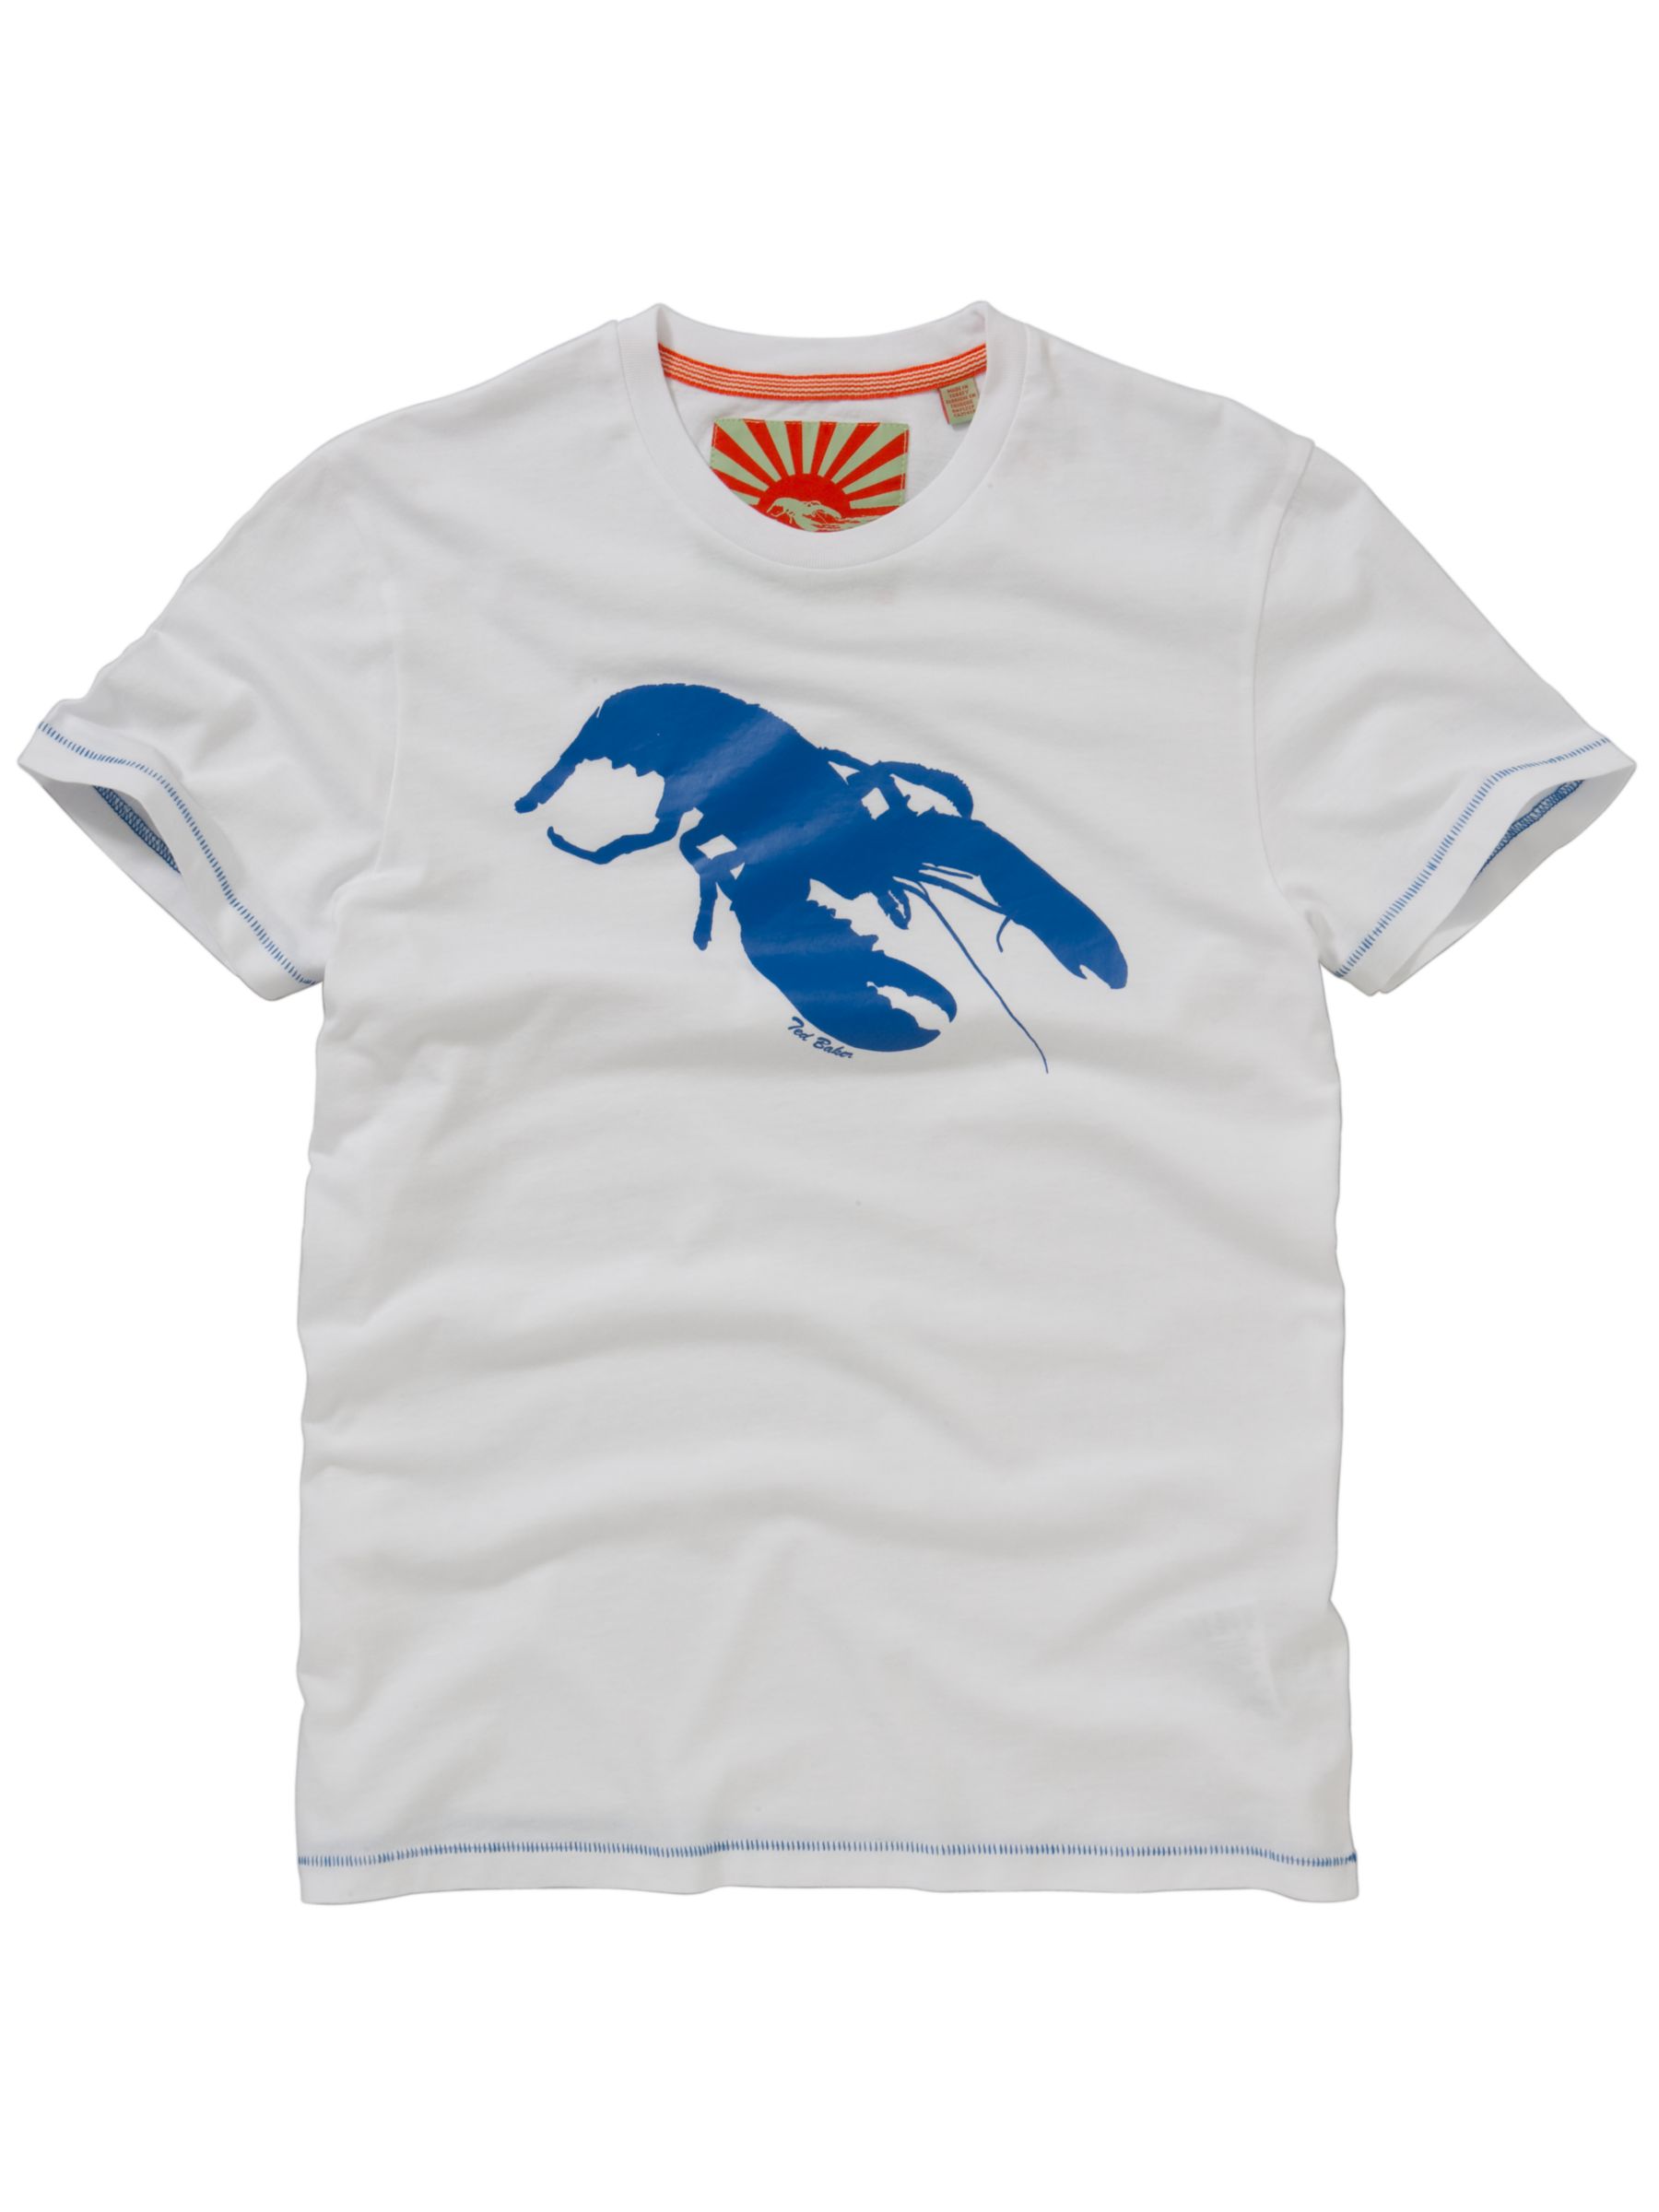 Ted Baker Lobster Print T-Shirt, White